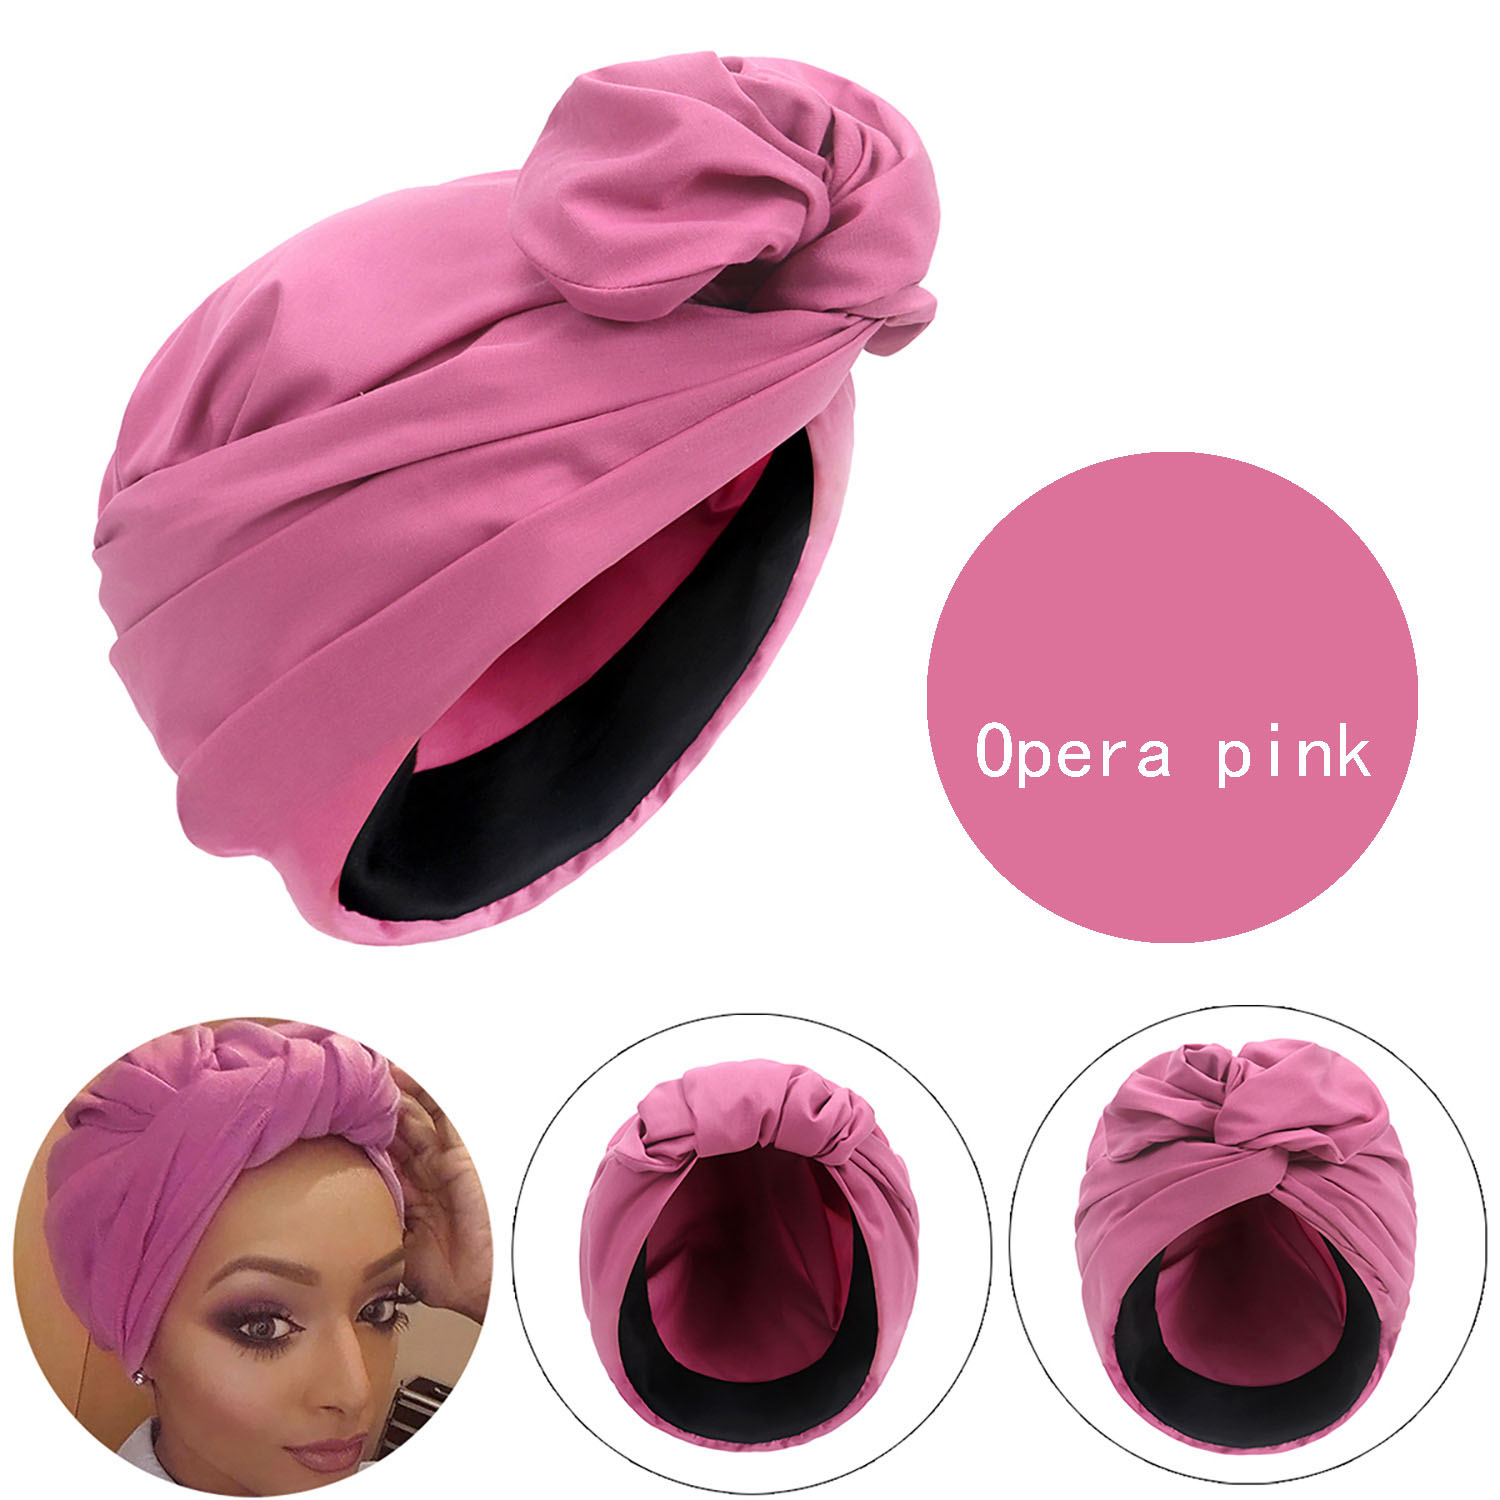 opera pink